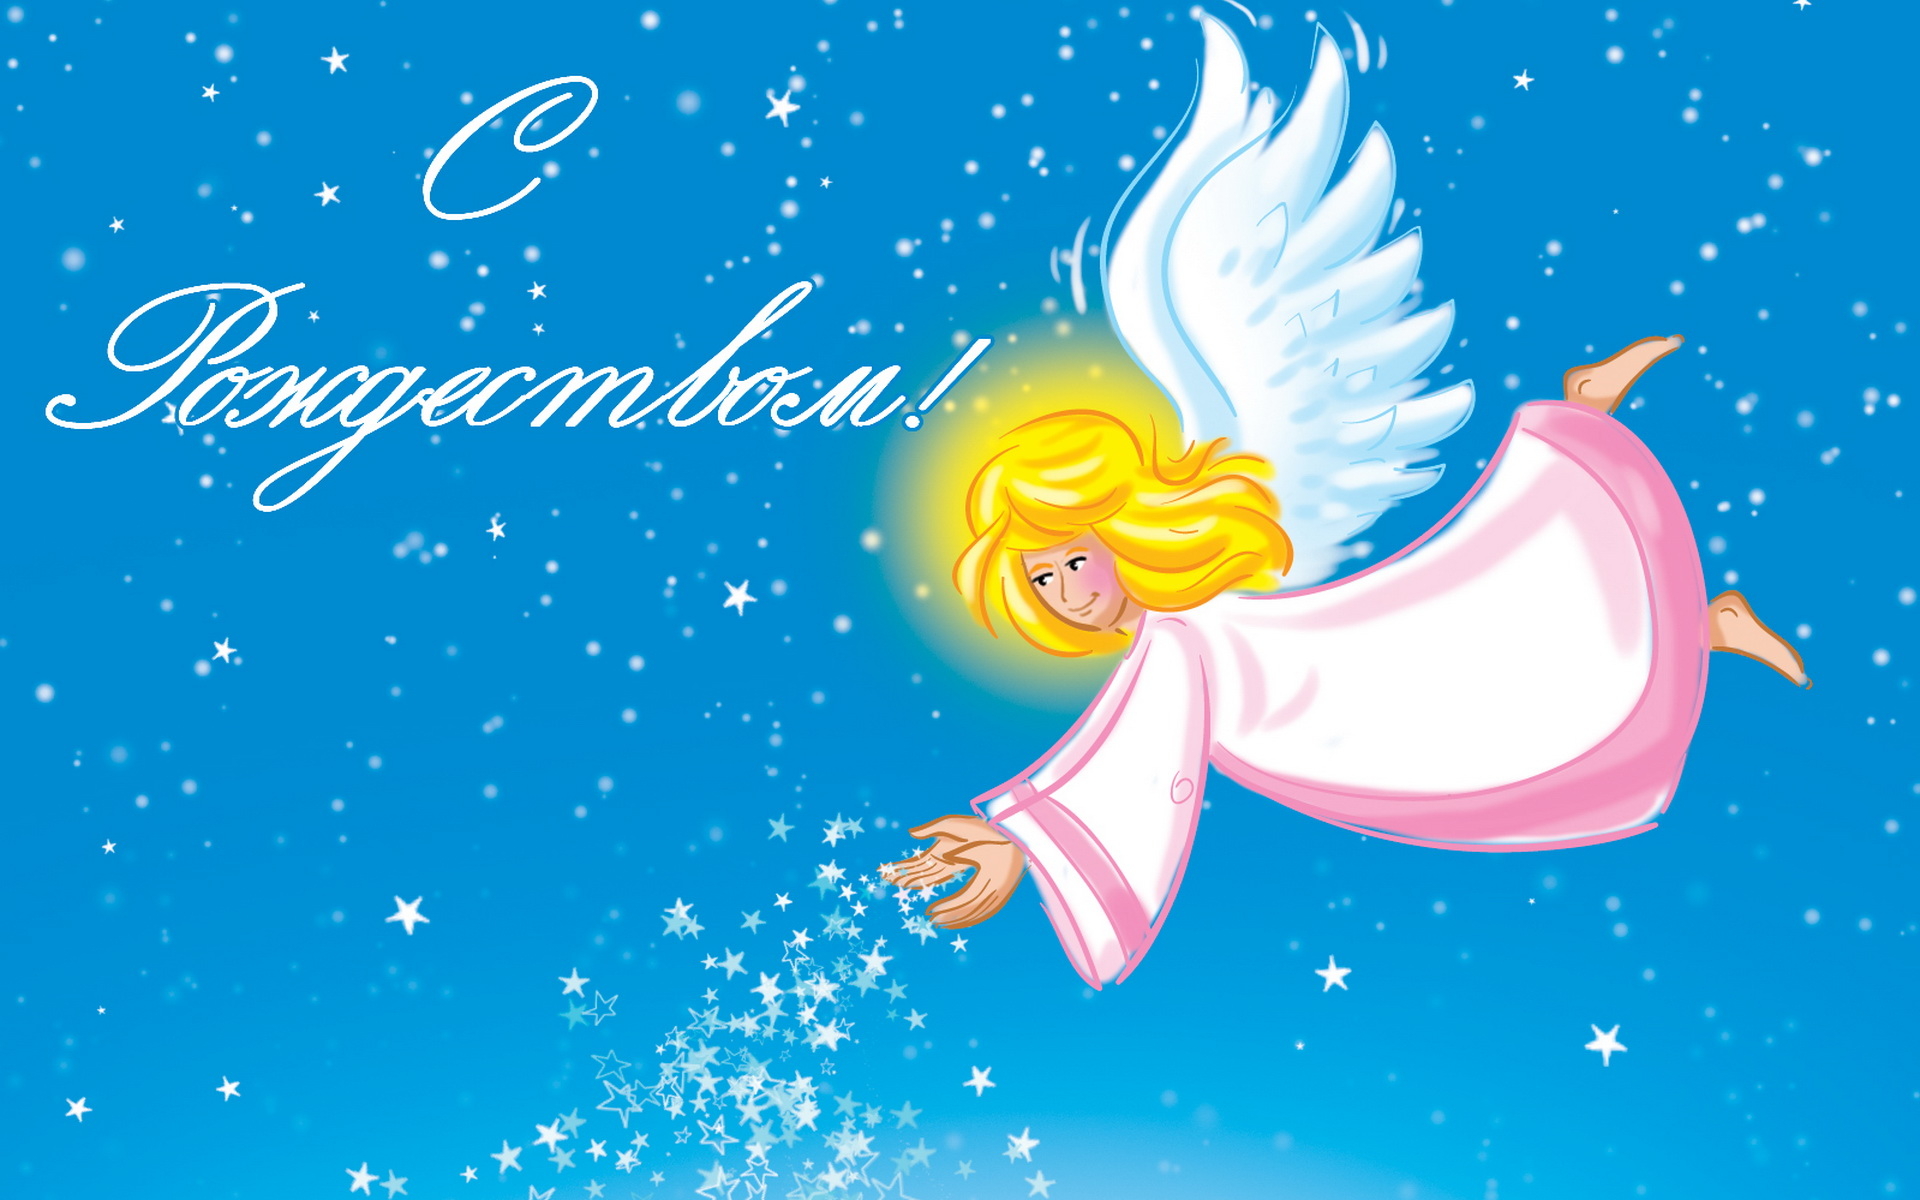 Christmas Angel Wallpaper And Image